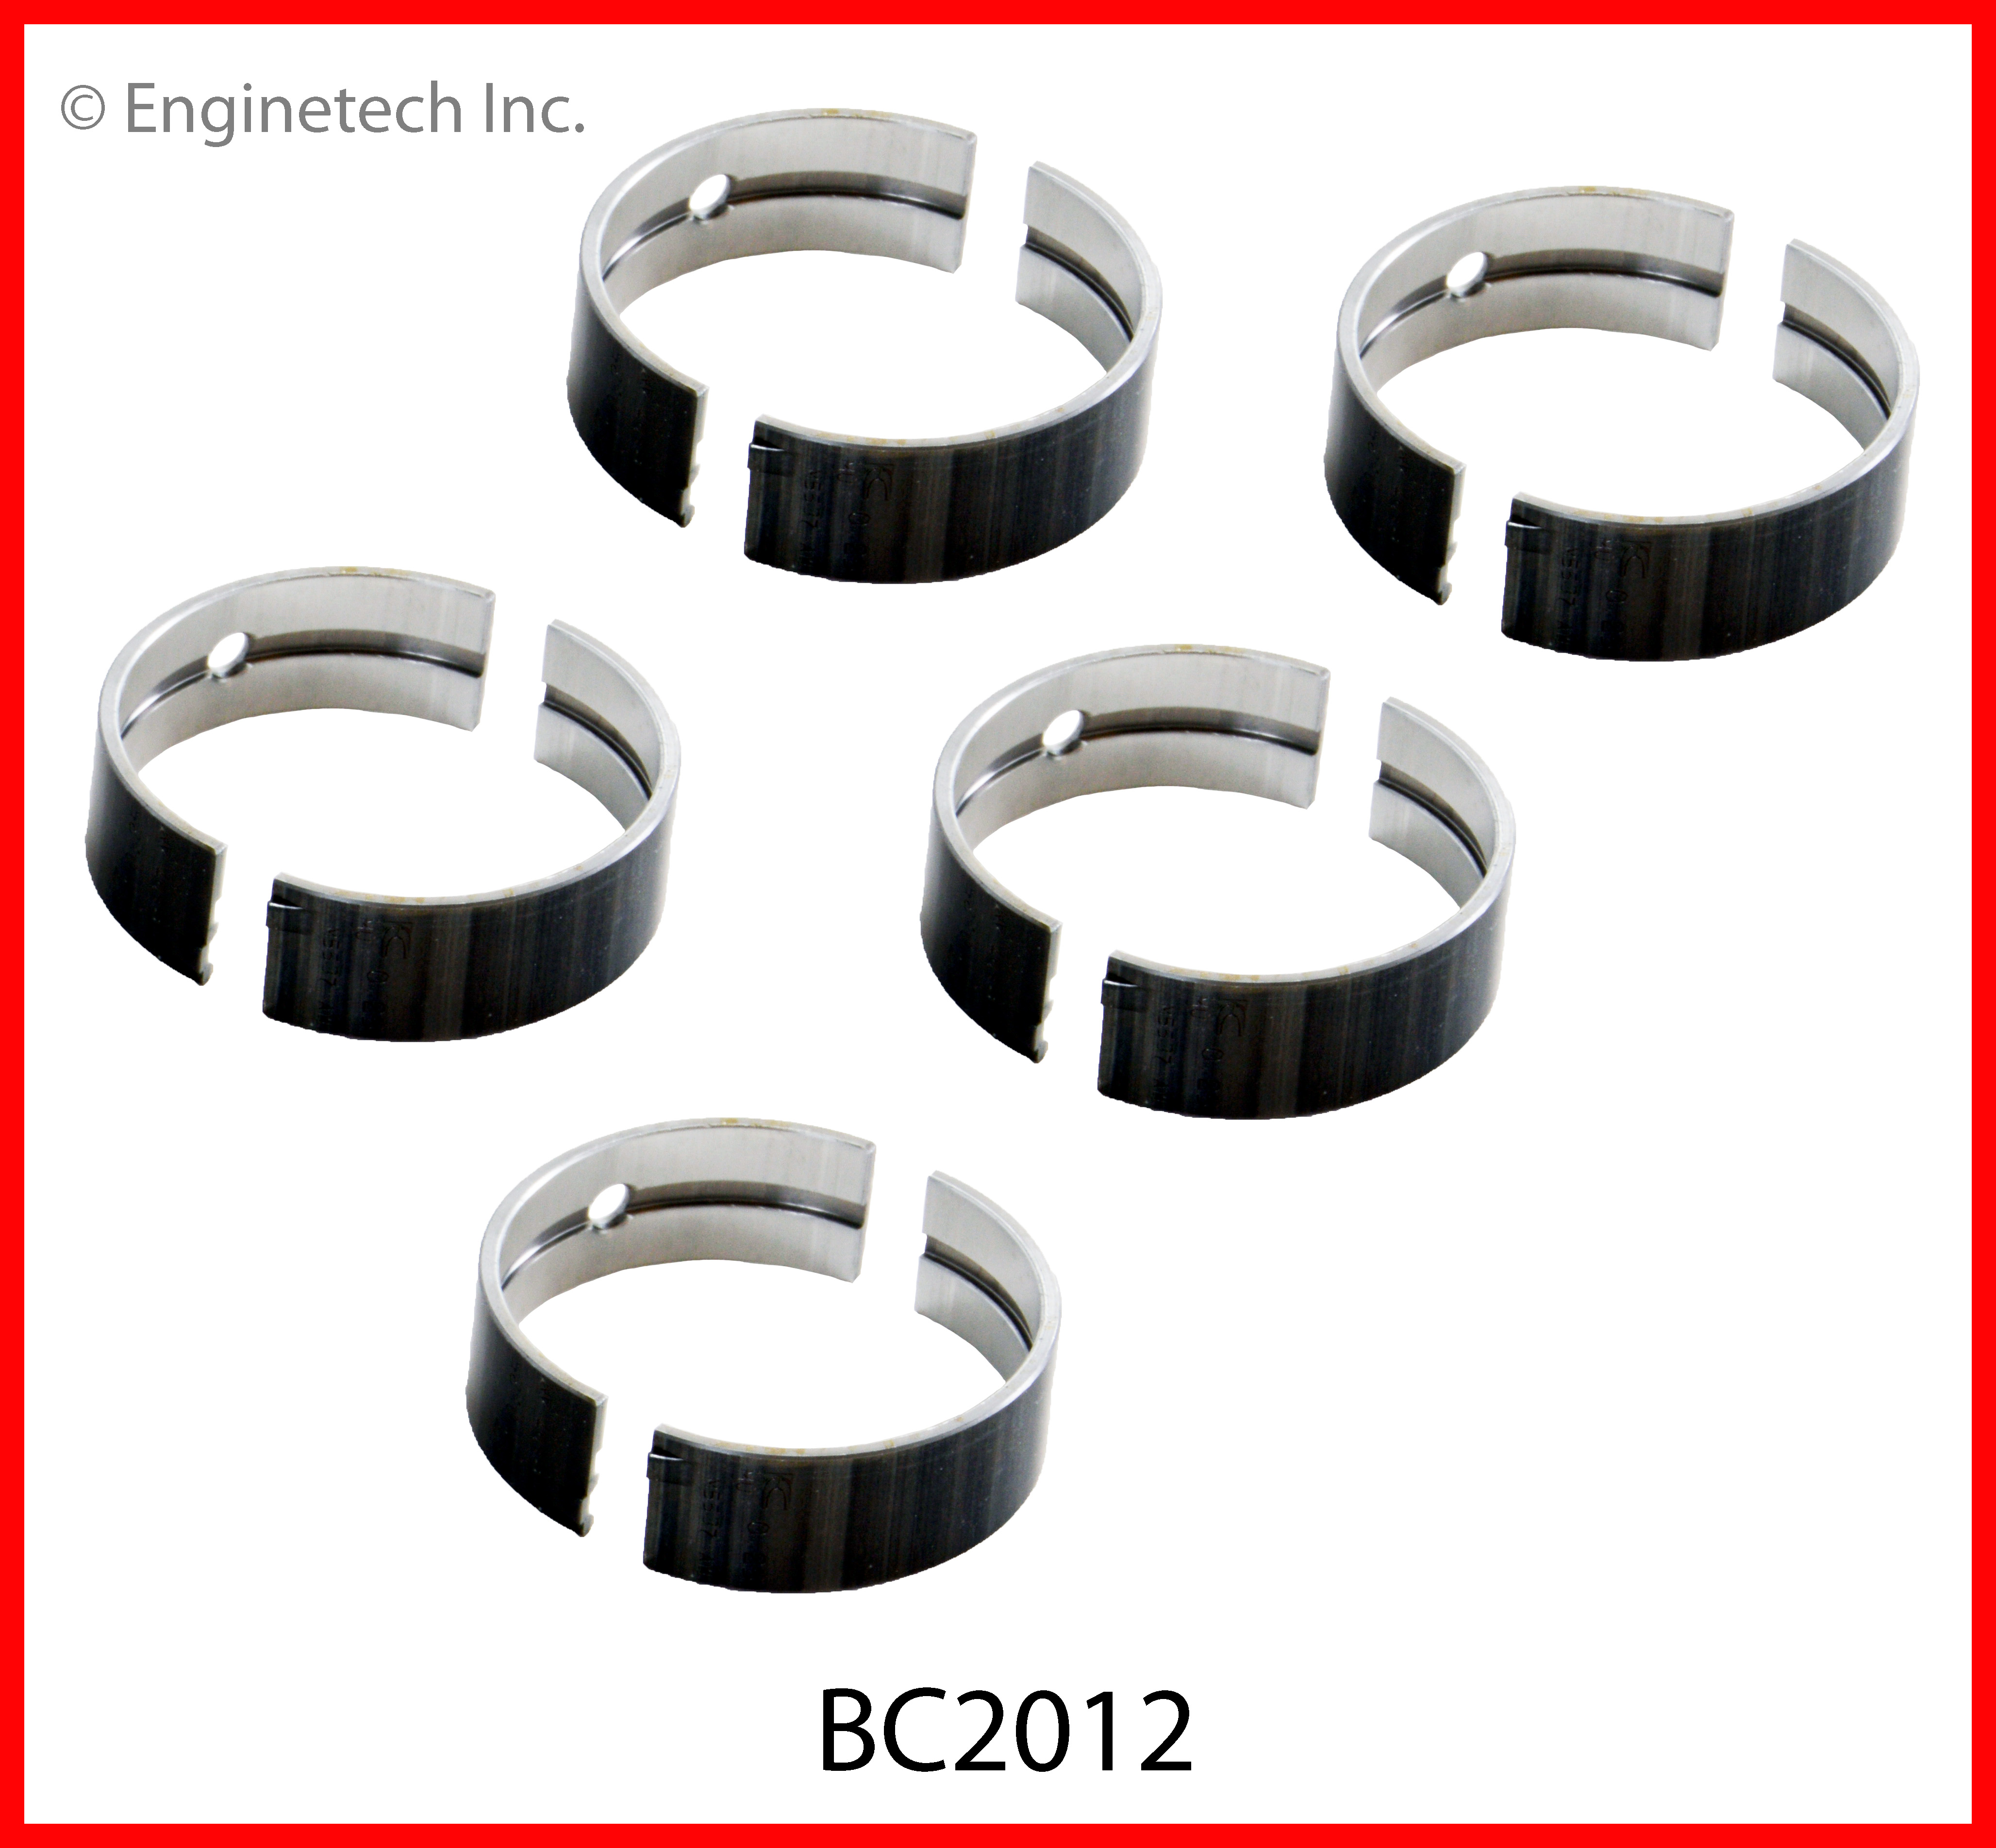 BC2012 Bearing Set - Main Enginetech